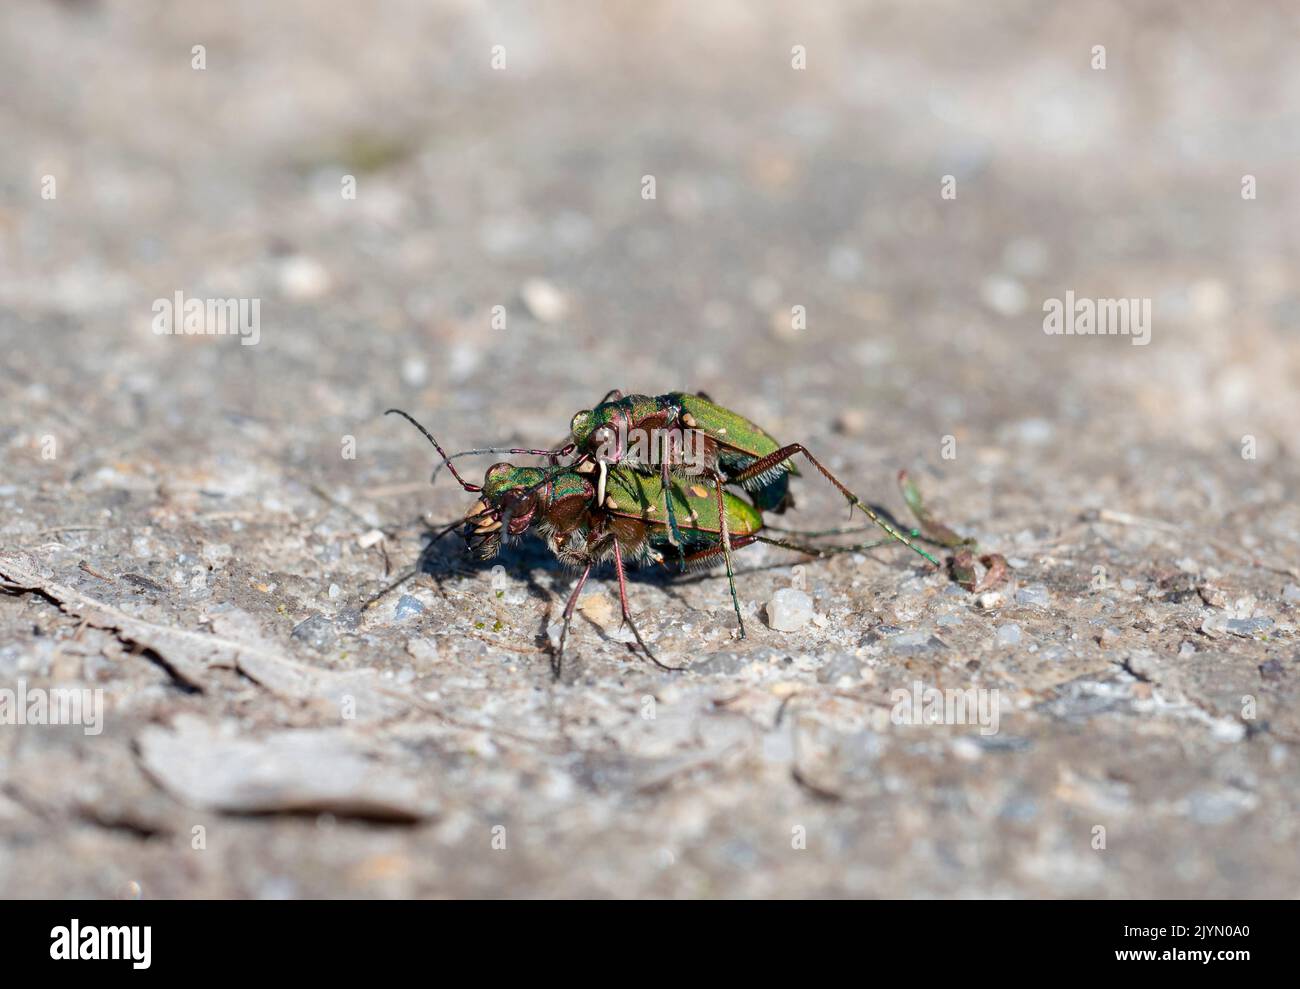 Green Tiger Beetle (Cicindela campestris) mating on ground, Brenne, France Stock Photo